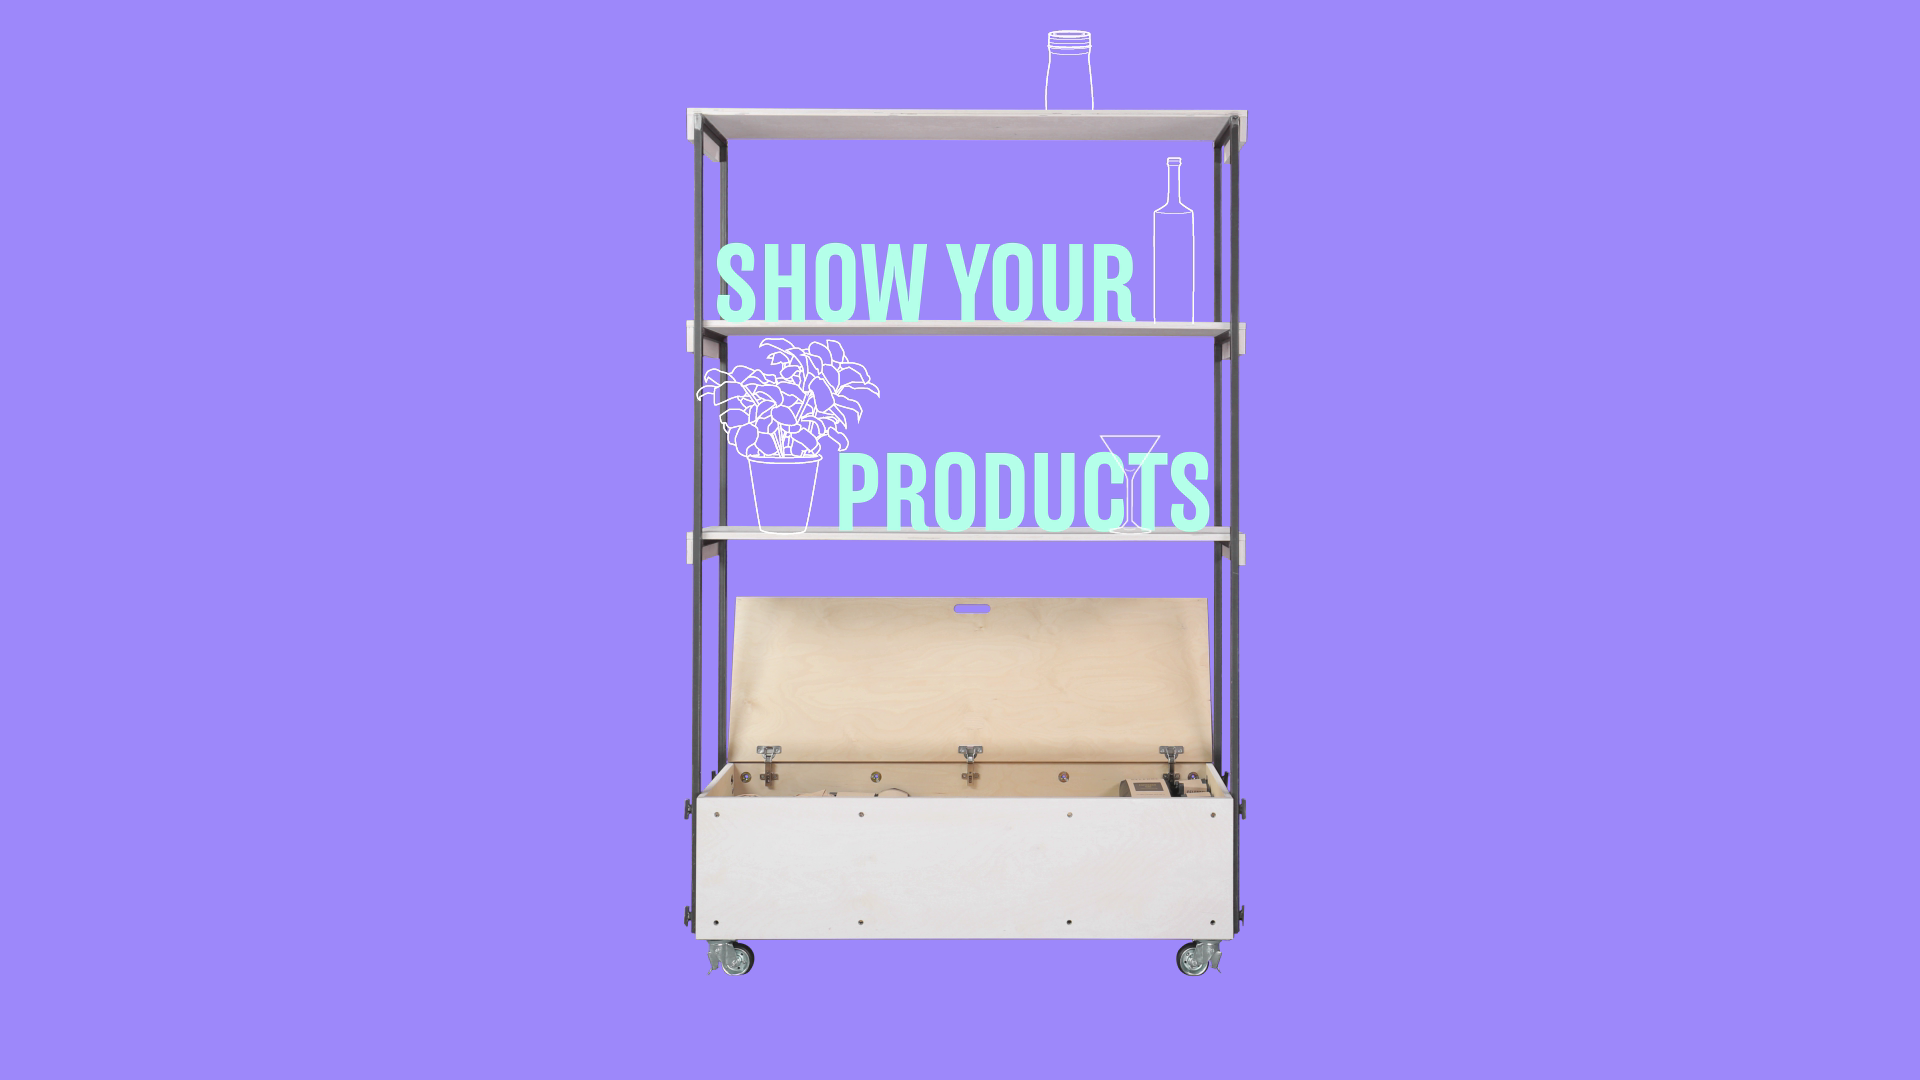 Ein Regal mit einem Show Your Products Schriftzug und gezeichneten Pflanzen